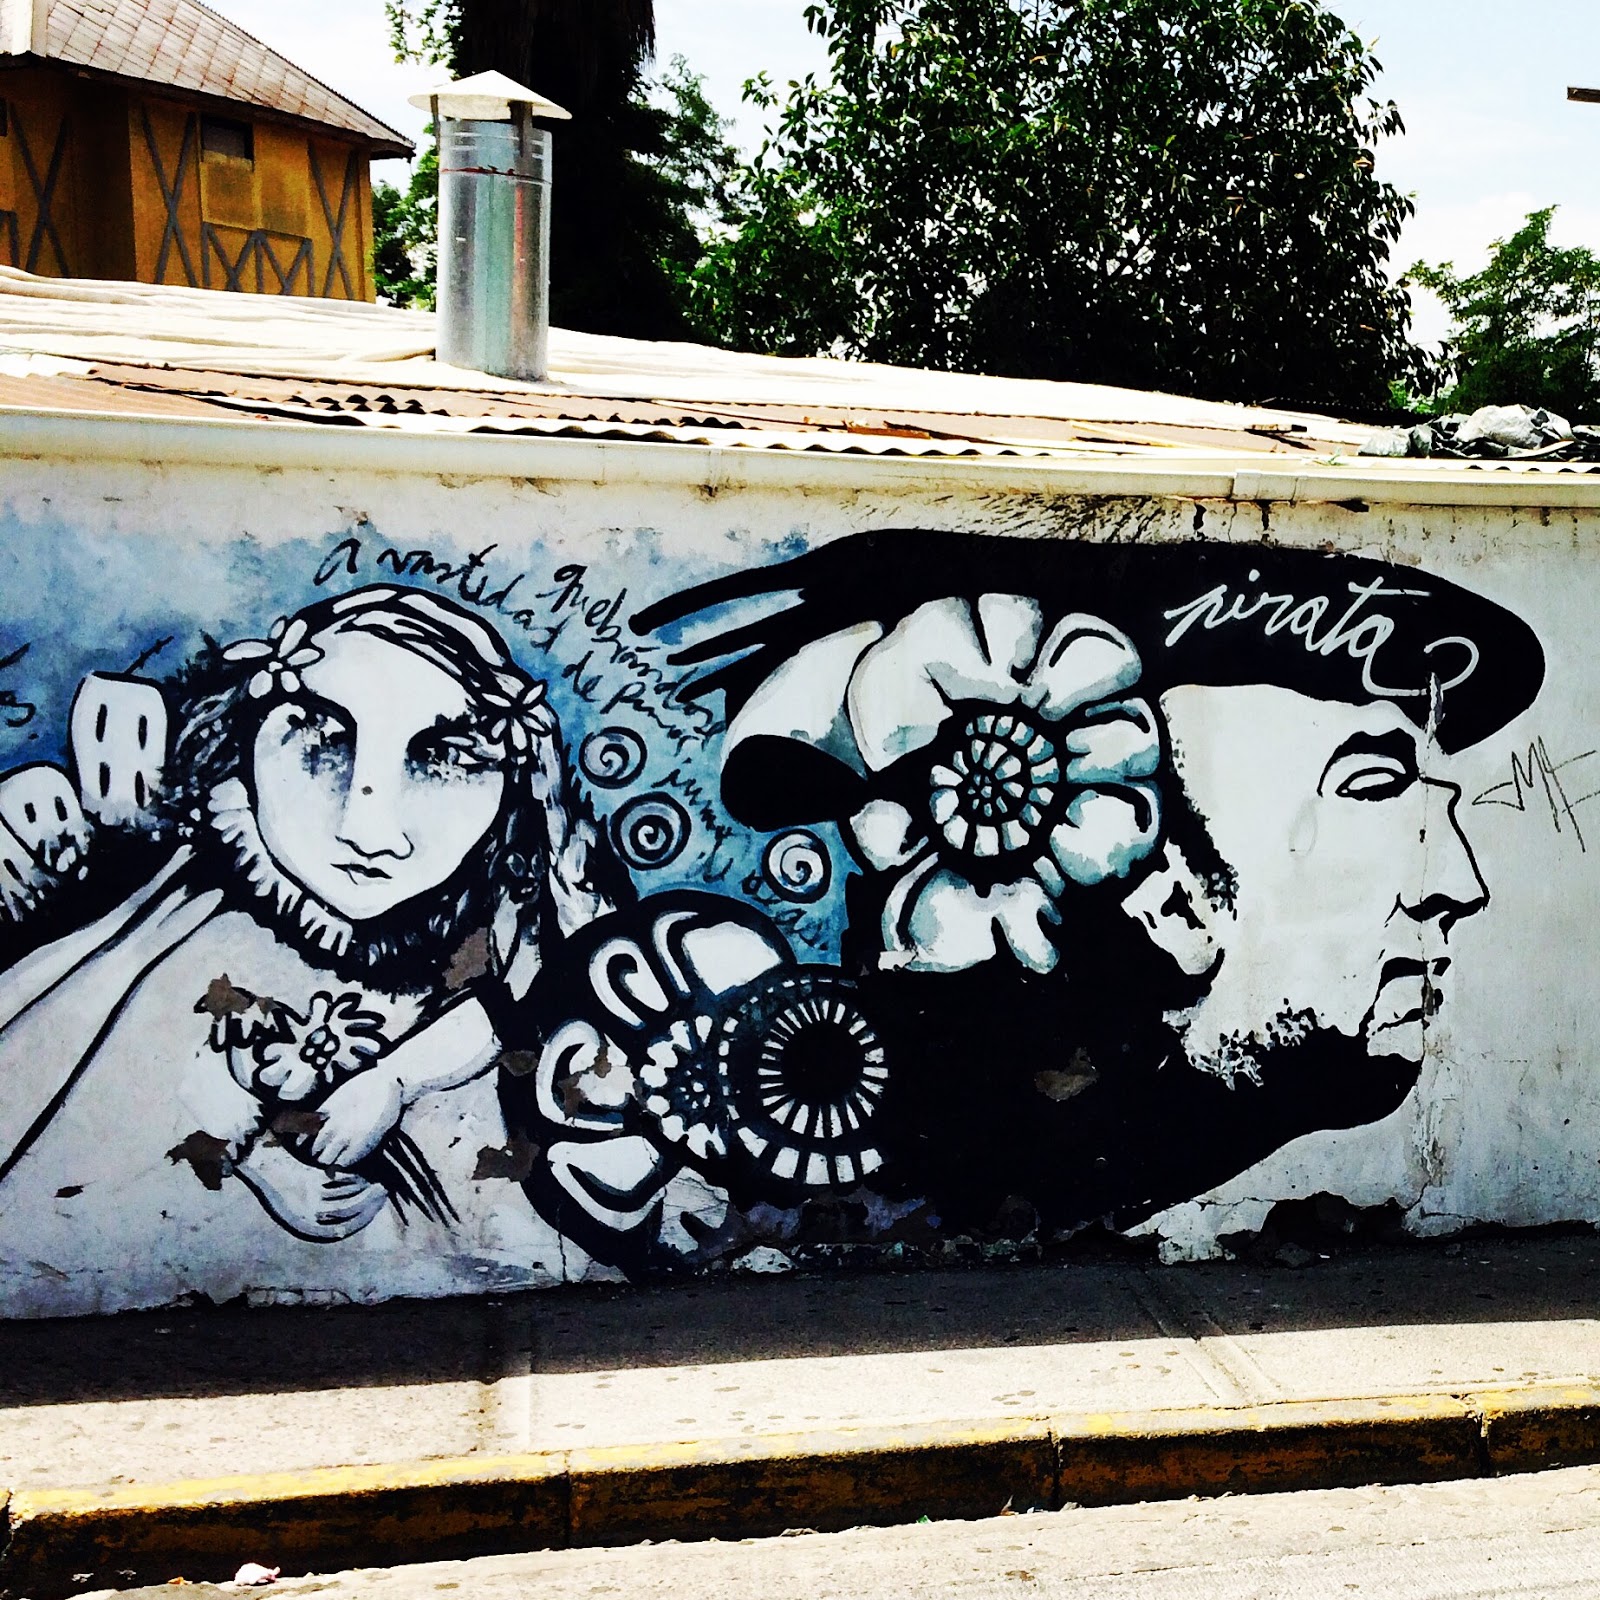 Muro próximo a La Chascona com grafite em homenagem ao poeta Neruda